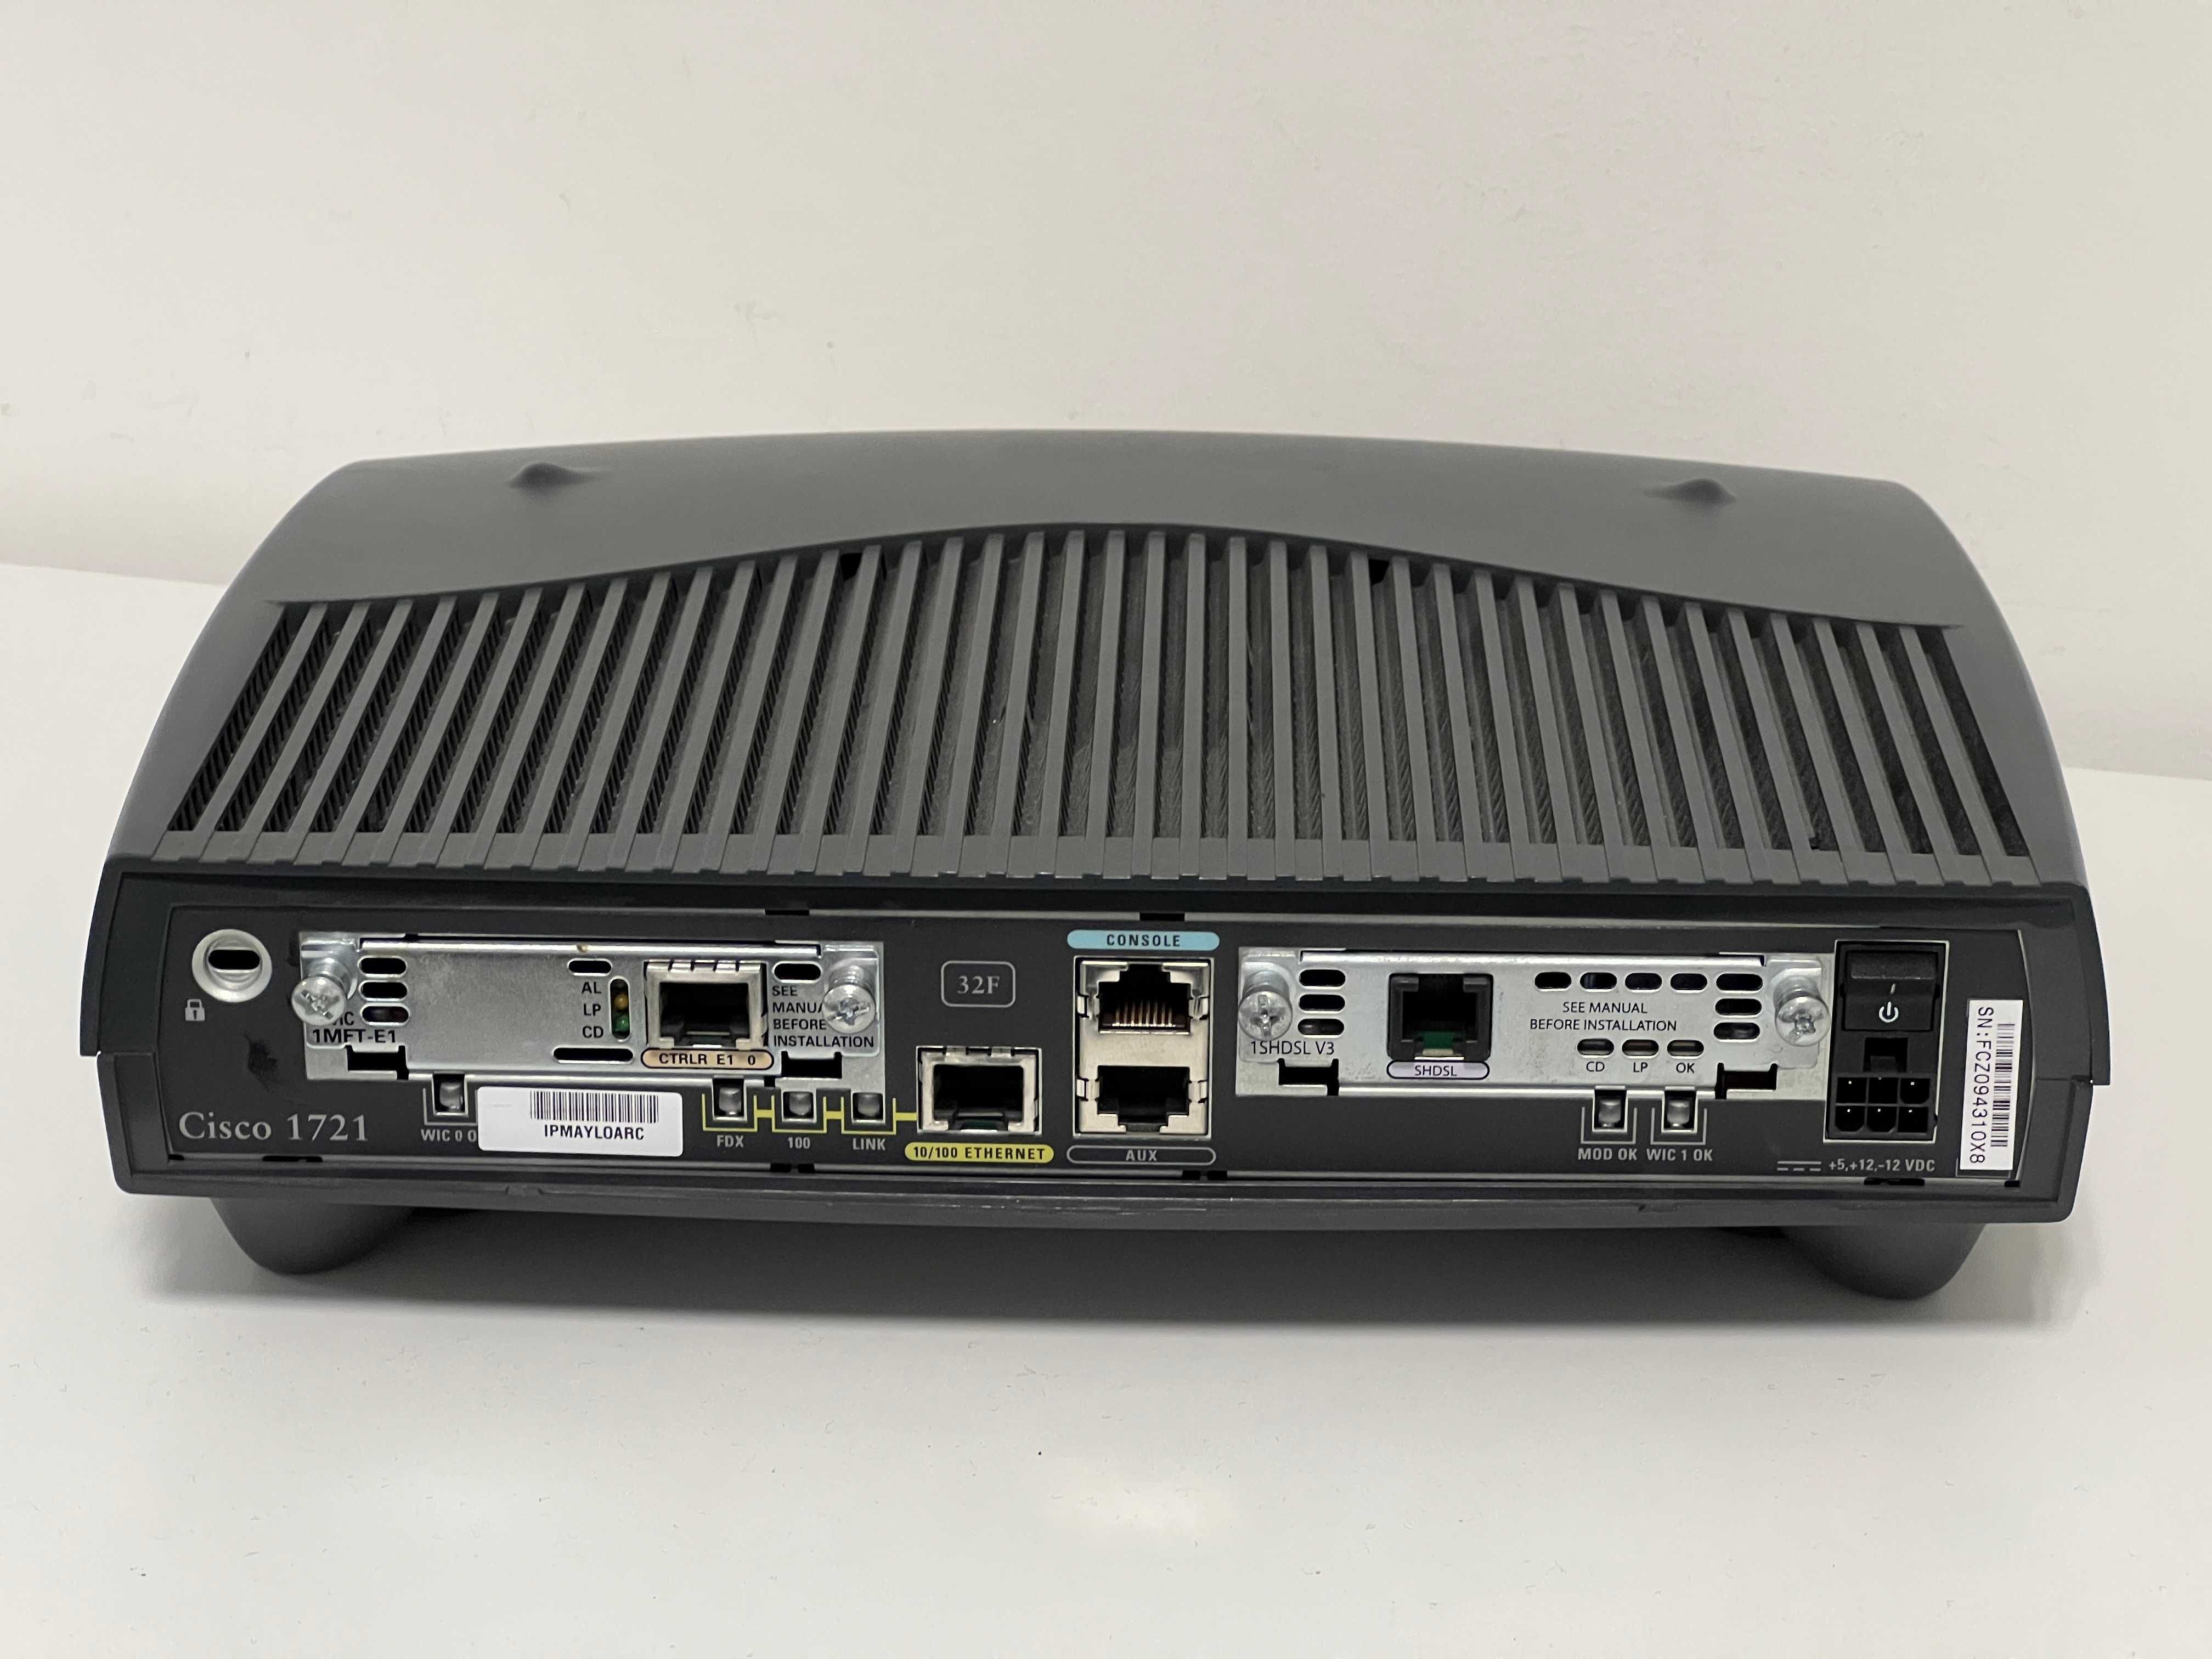 Router modular Cisco 1721 Series 1700 - Usado